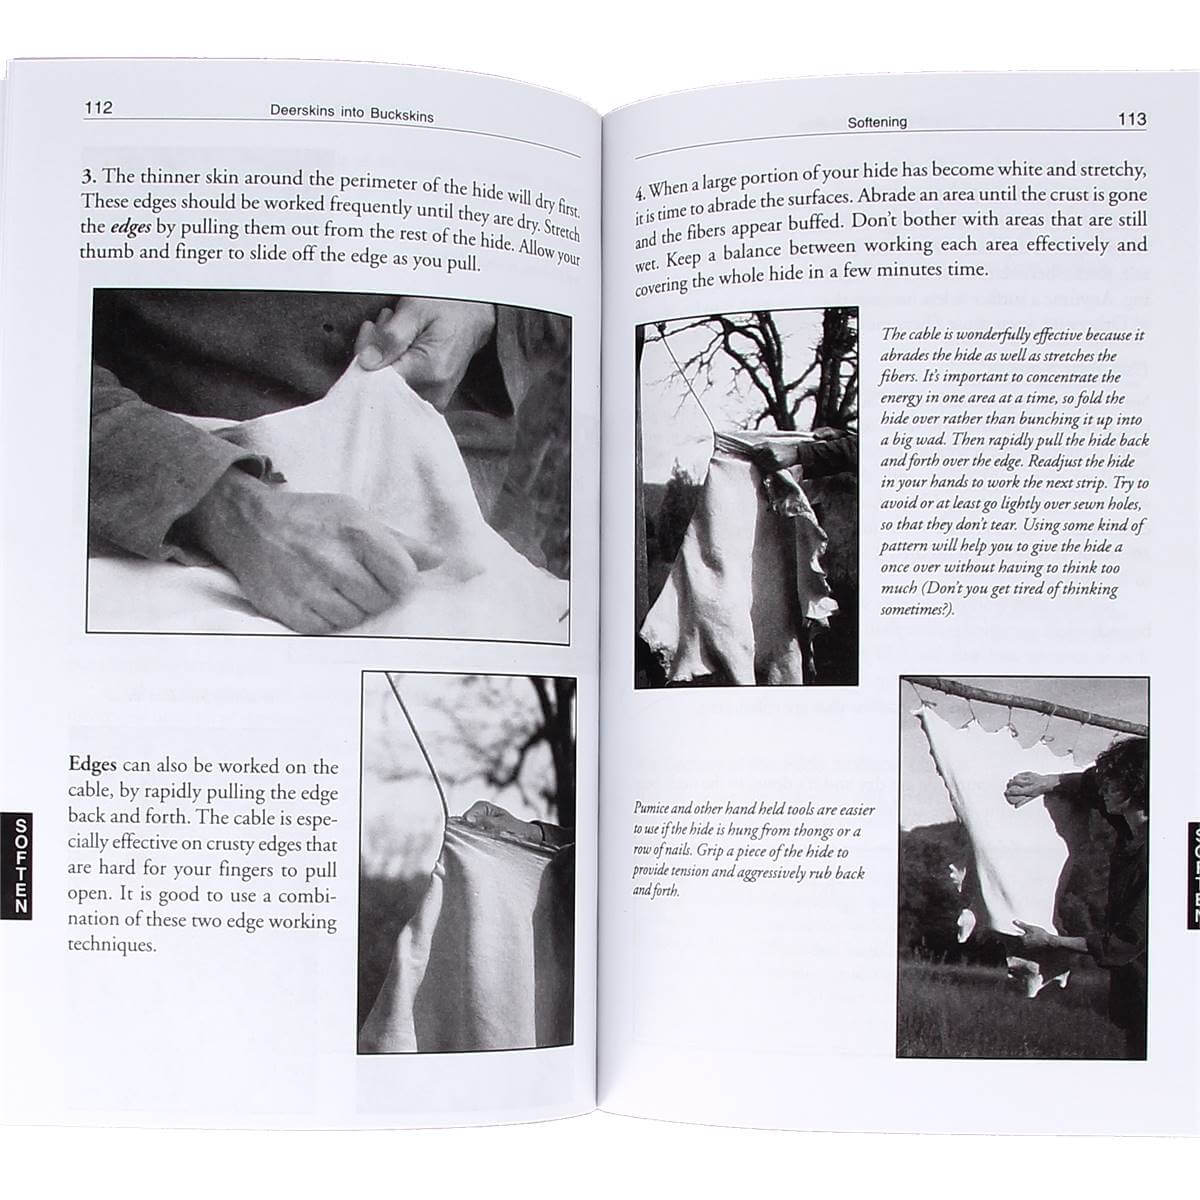 Livre "DEERKINS INTO BUCKSKINS" - Techniques de tannage du cuir - 2e édition